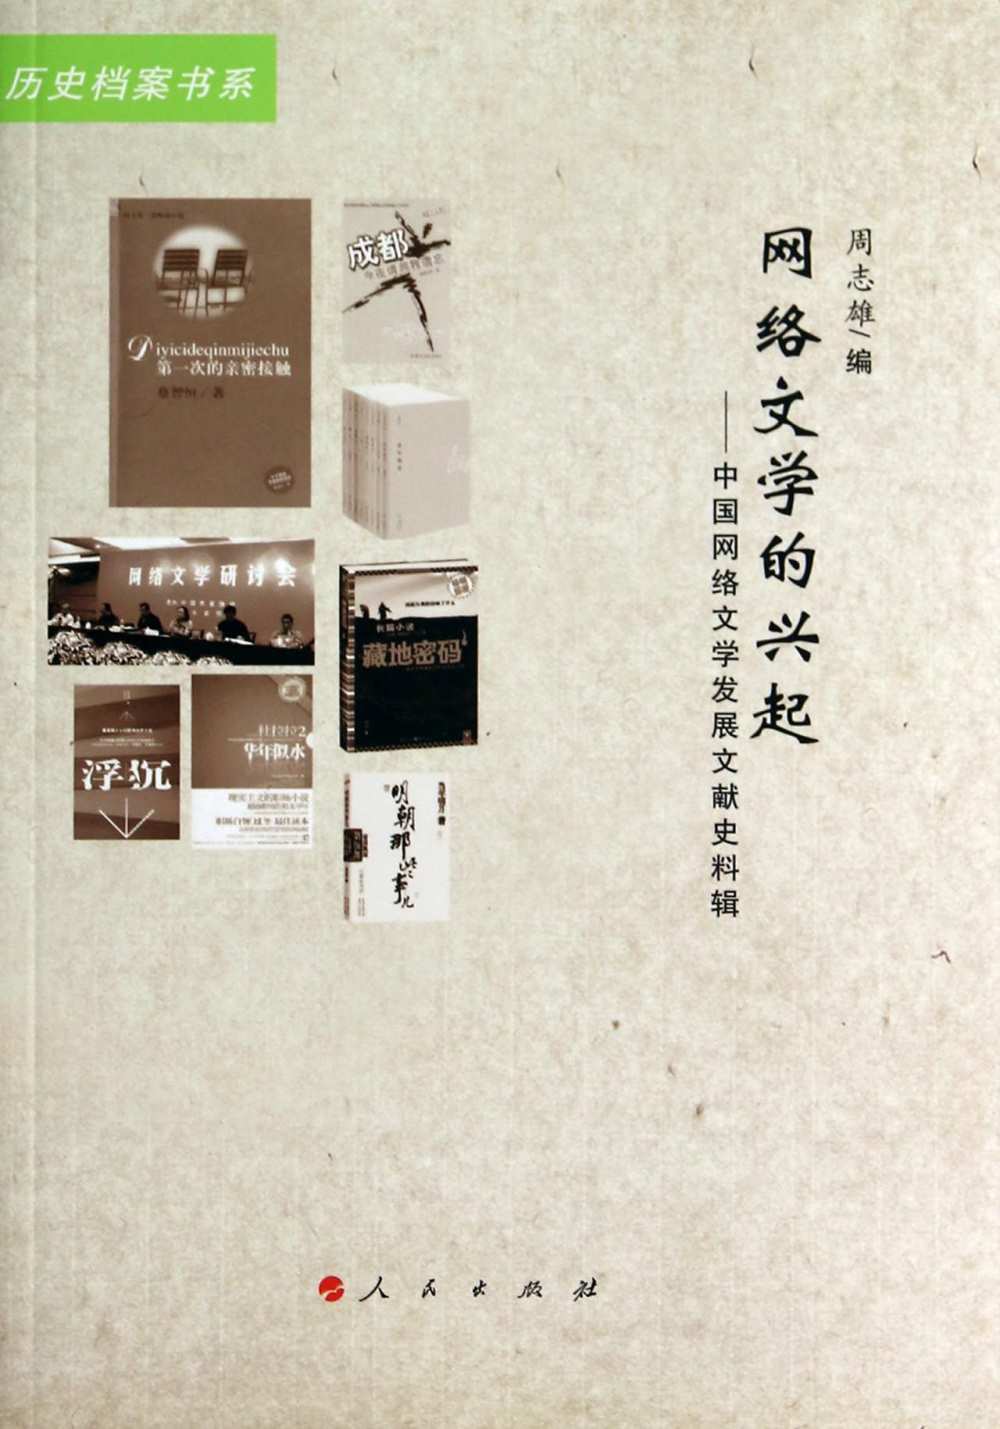 網絡文學的興起--中國網絡文學發展文獻史料輯